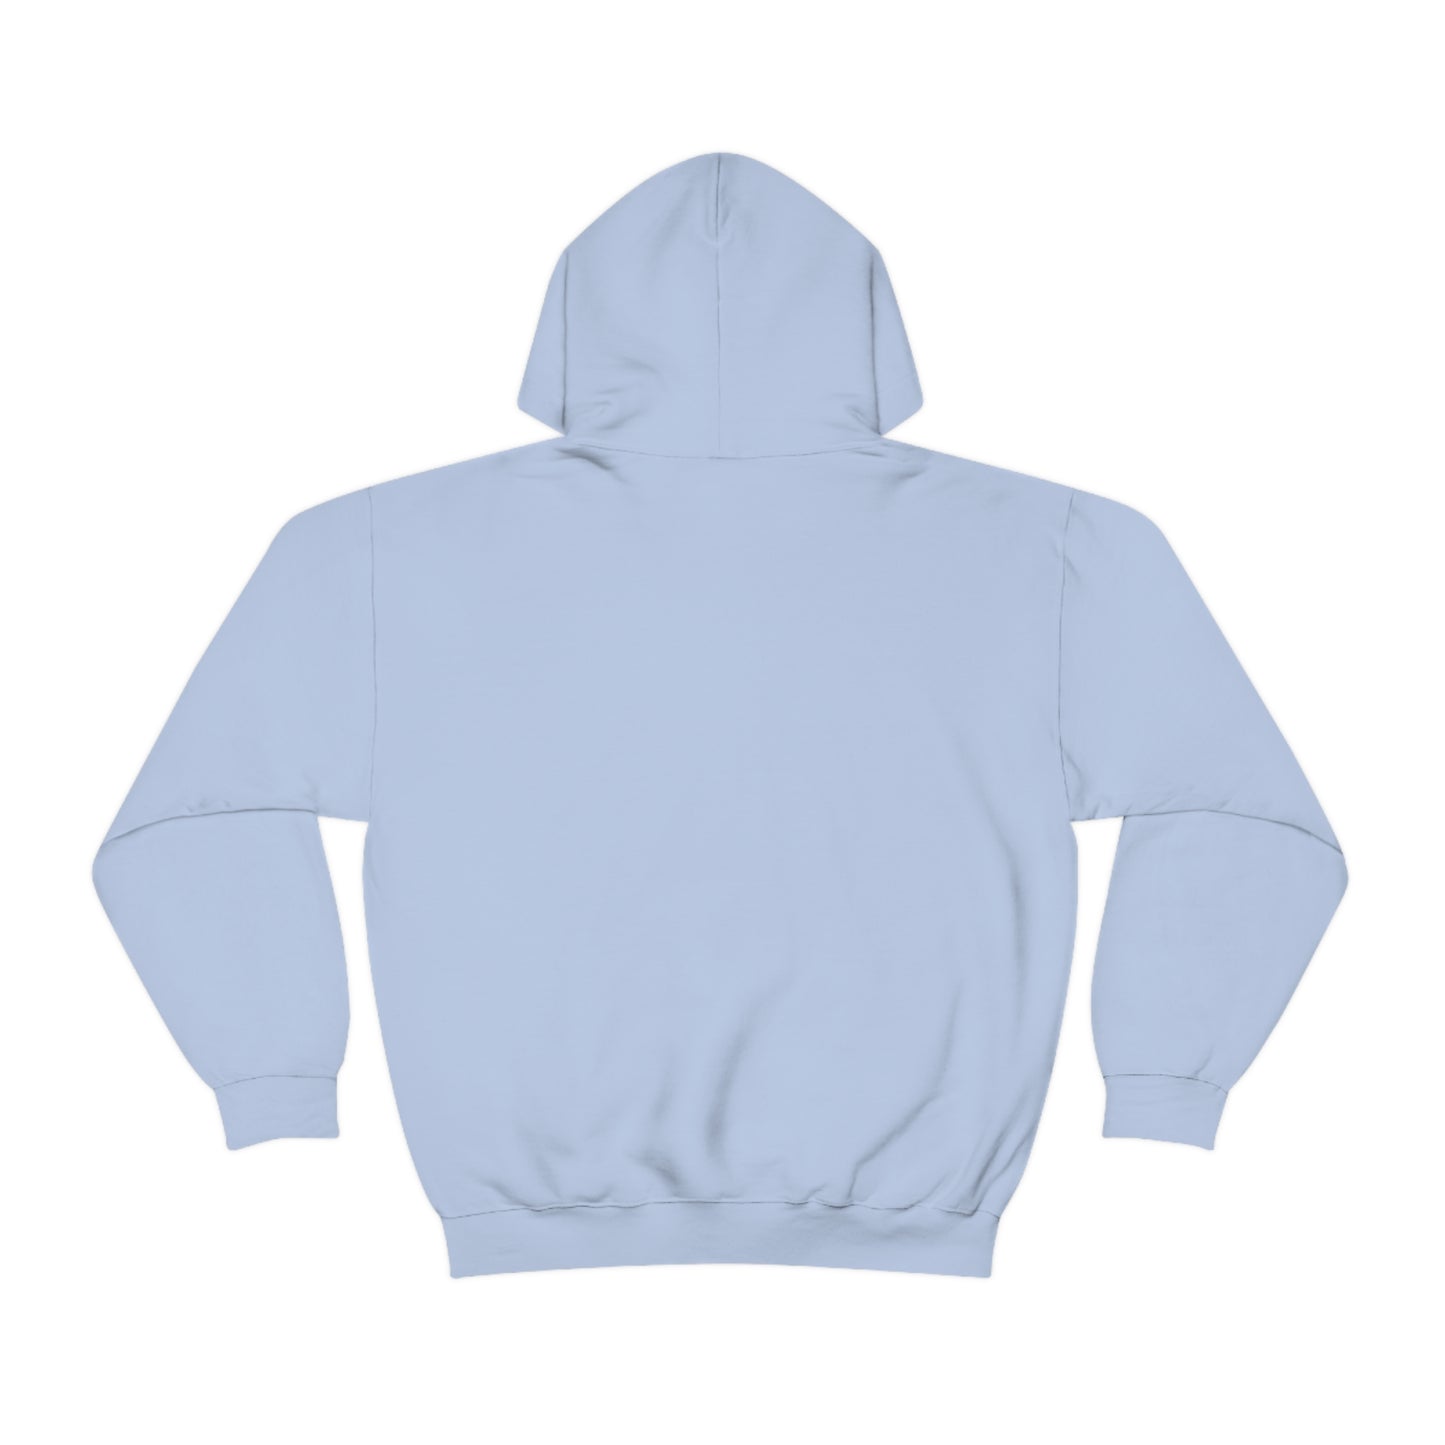 The Report Abuse Hoodie Unisex Heavy Blend™ Hooded Sweatshirt